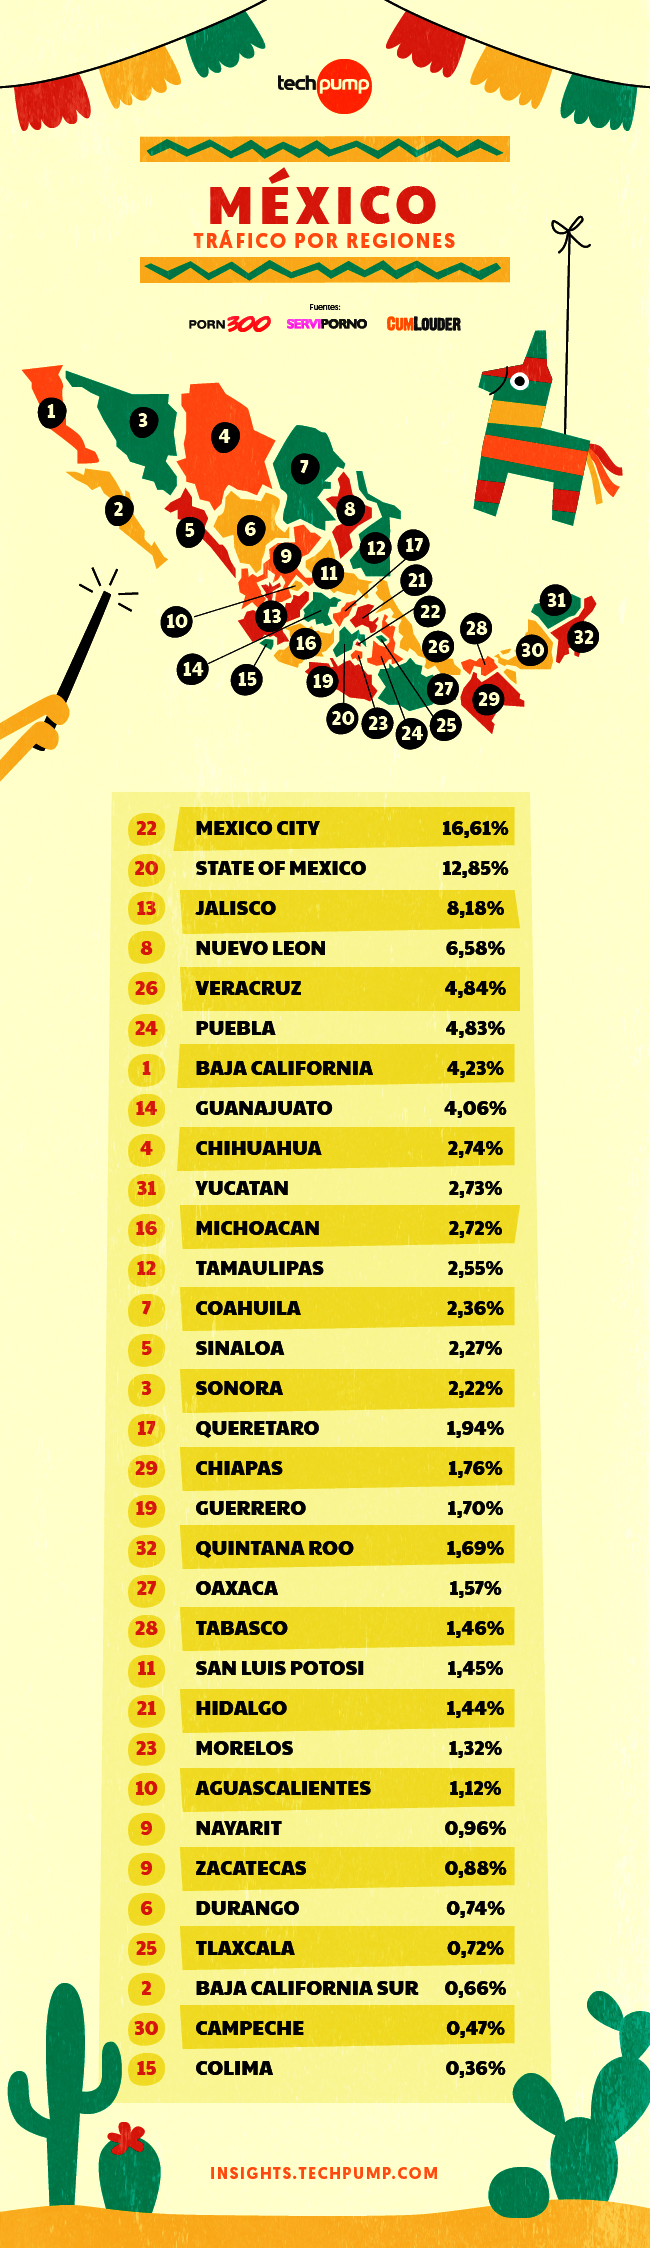 Tráfico por regiones México